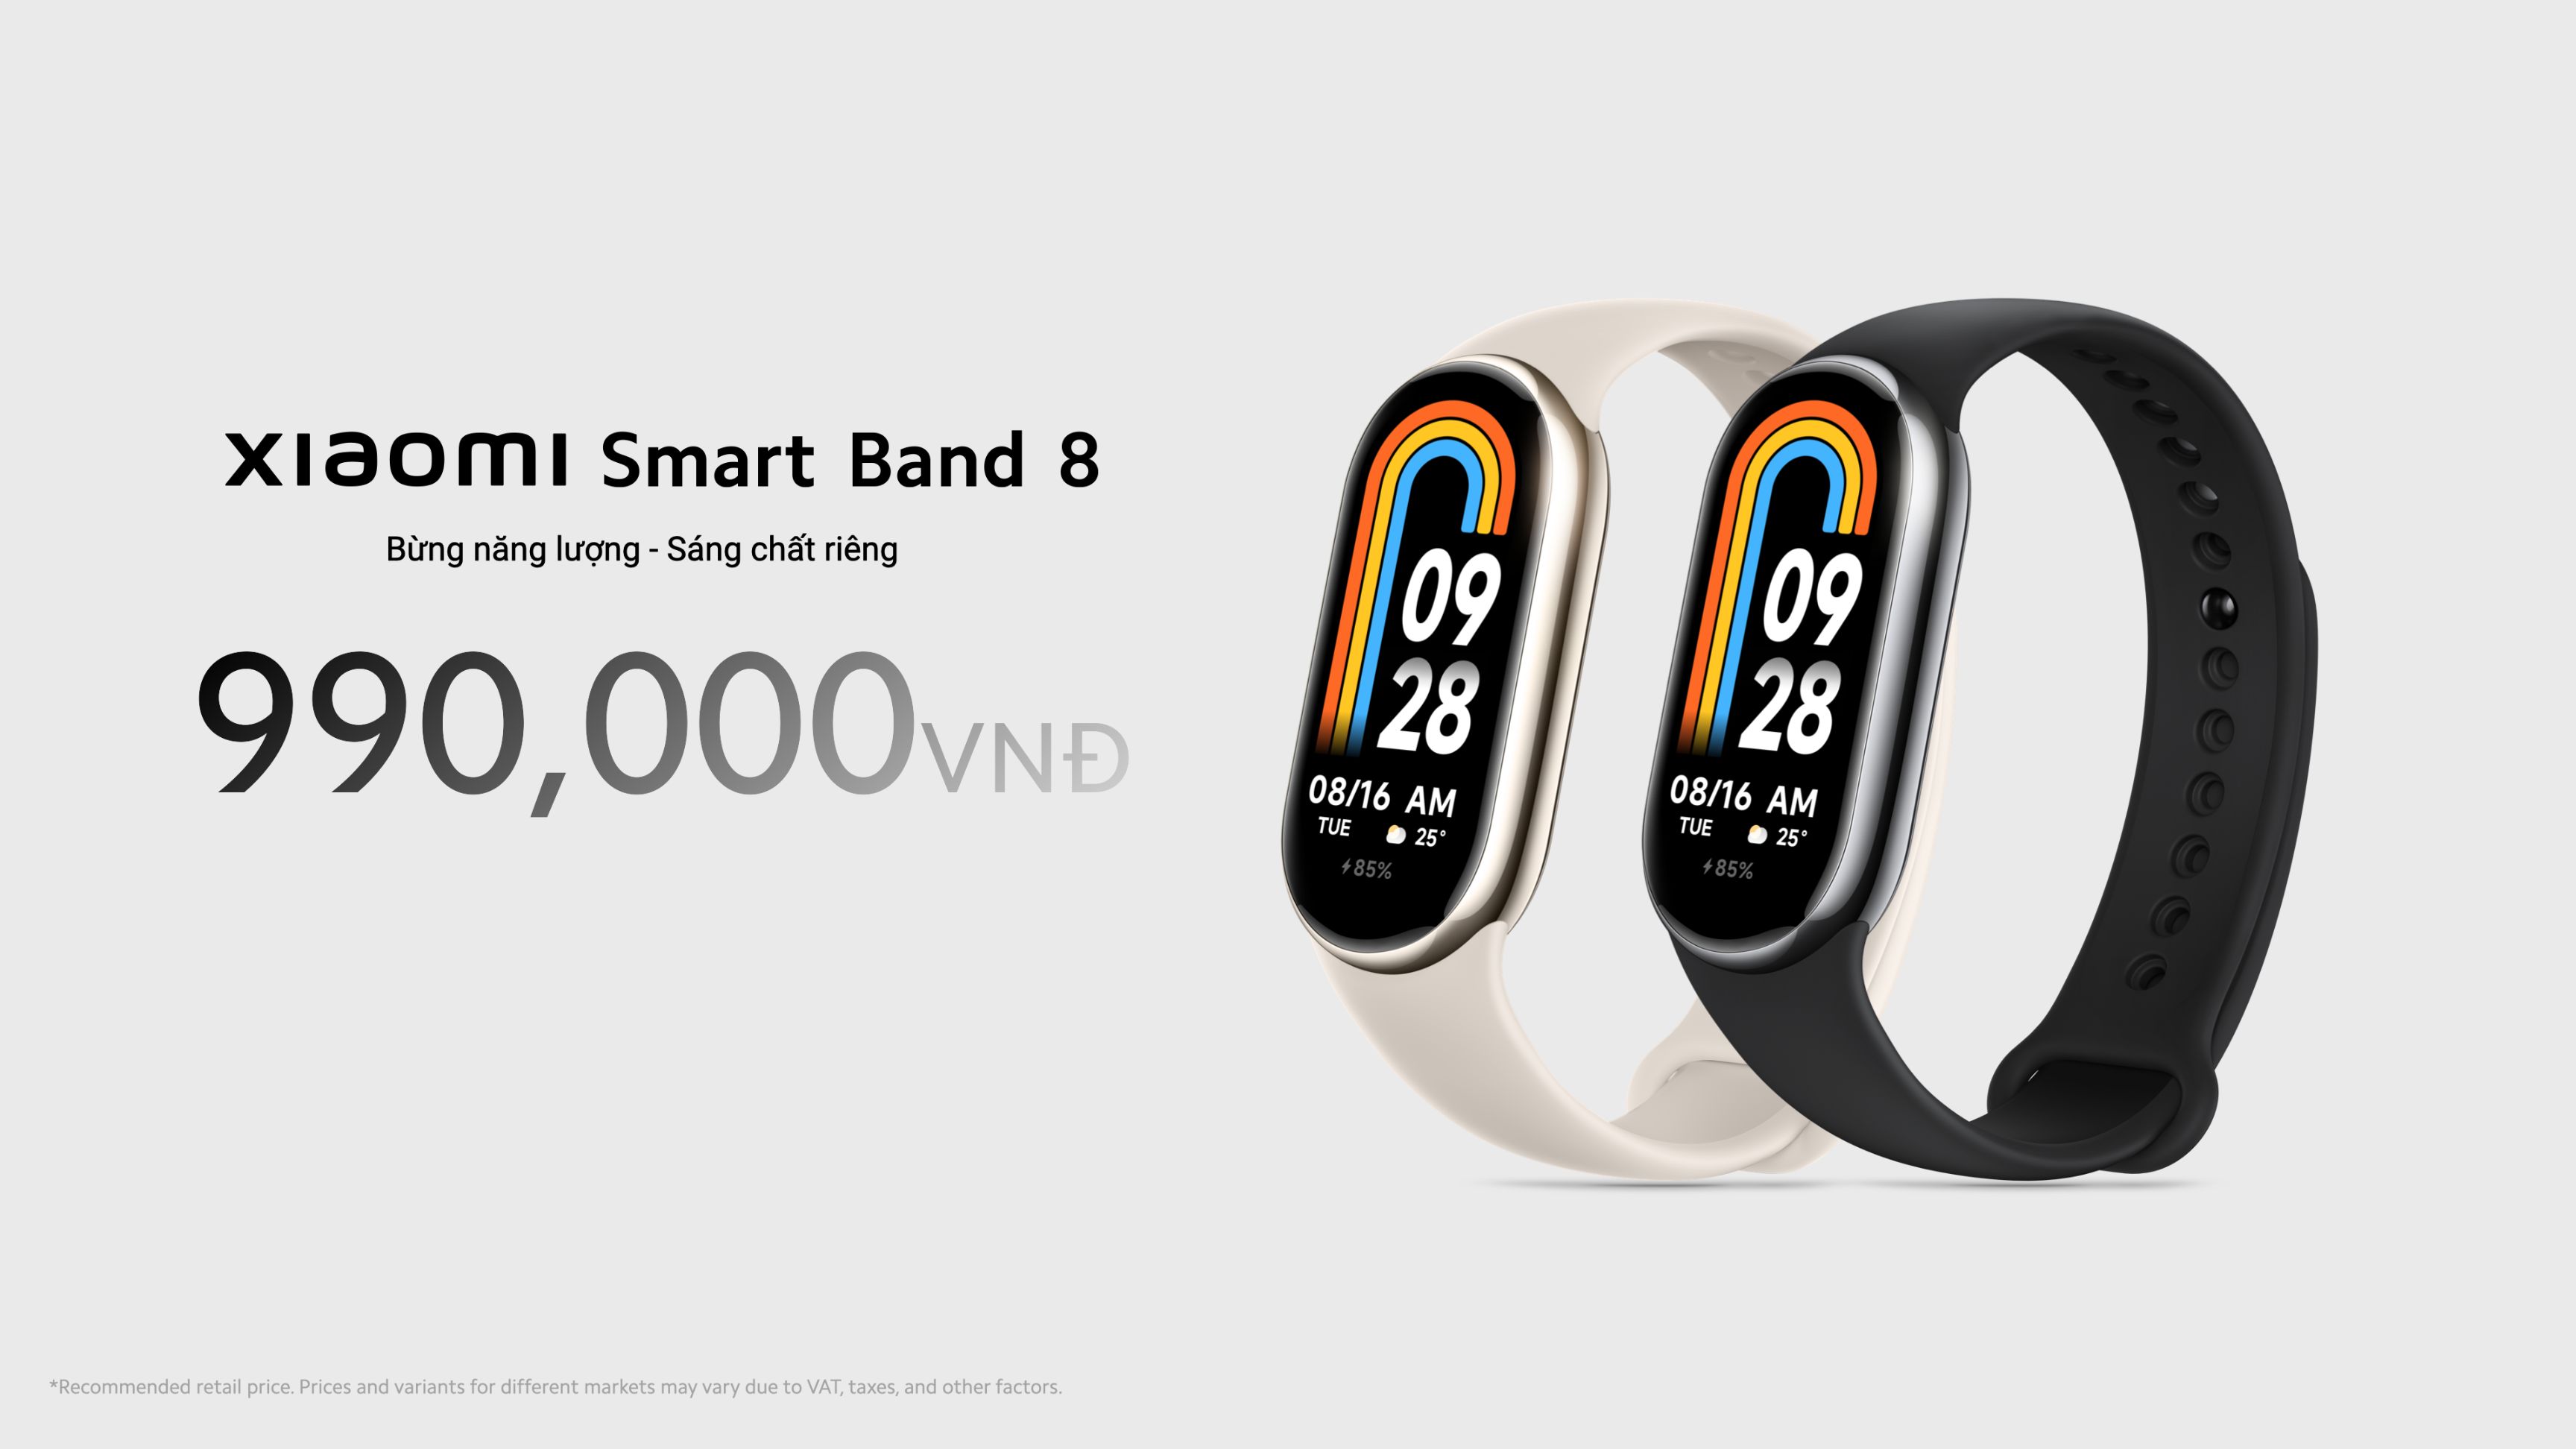 Xiaomi Smart Band 8 Series 1 Xiaomi Smart Band 8: Màn hình 60Hz, pin dùng 2 tuần, giá chỉ 990.000 đồng